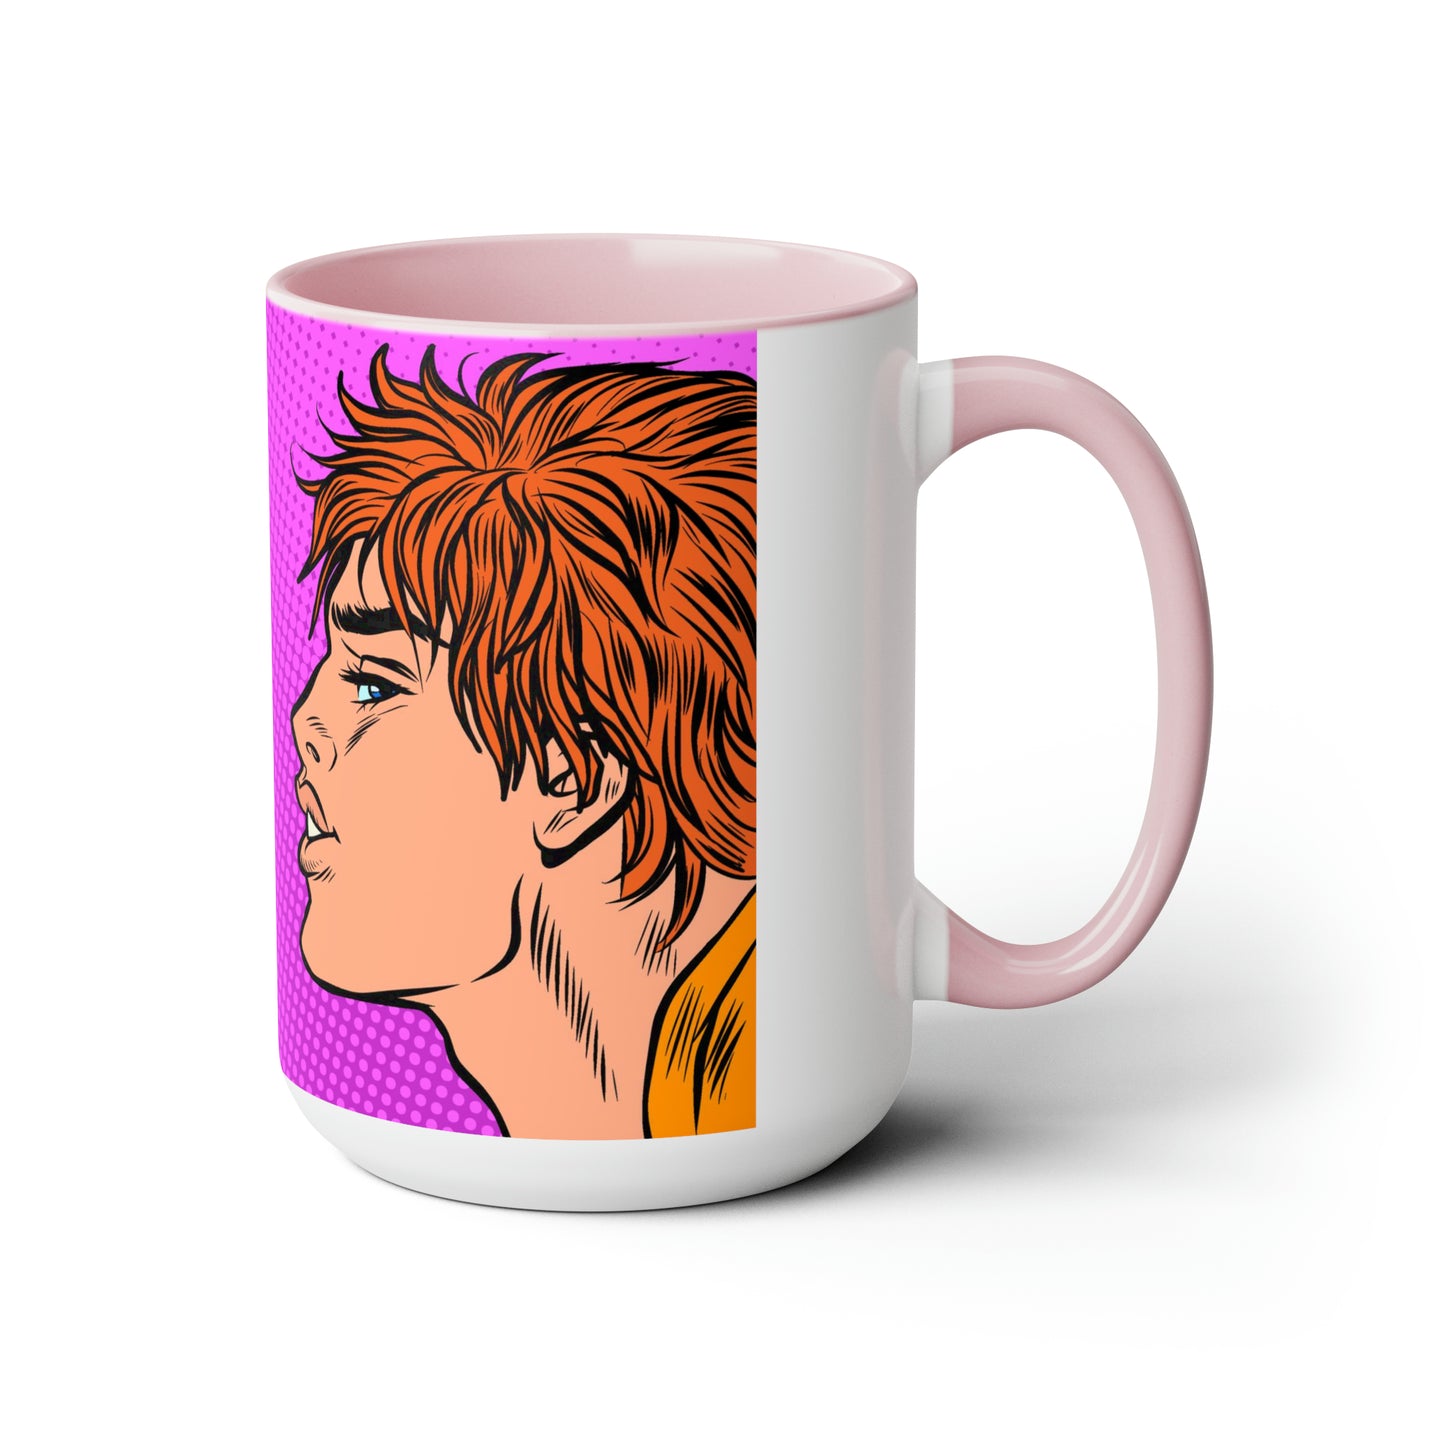 Two-Tone Coffee Mugs, 15oz - Gay Pop Art Kiss